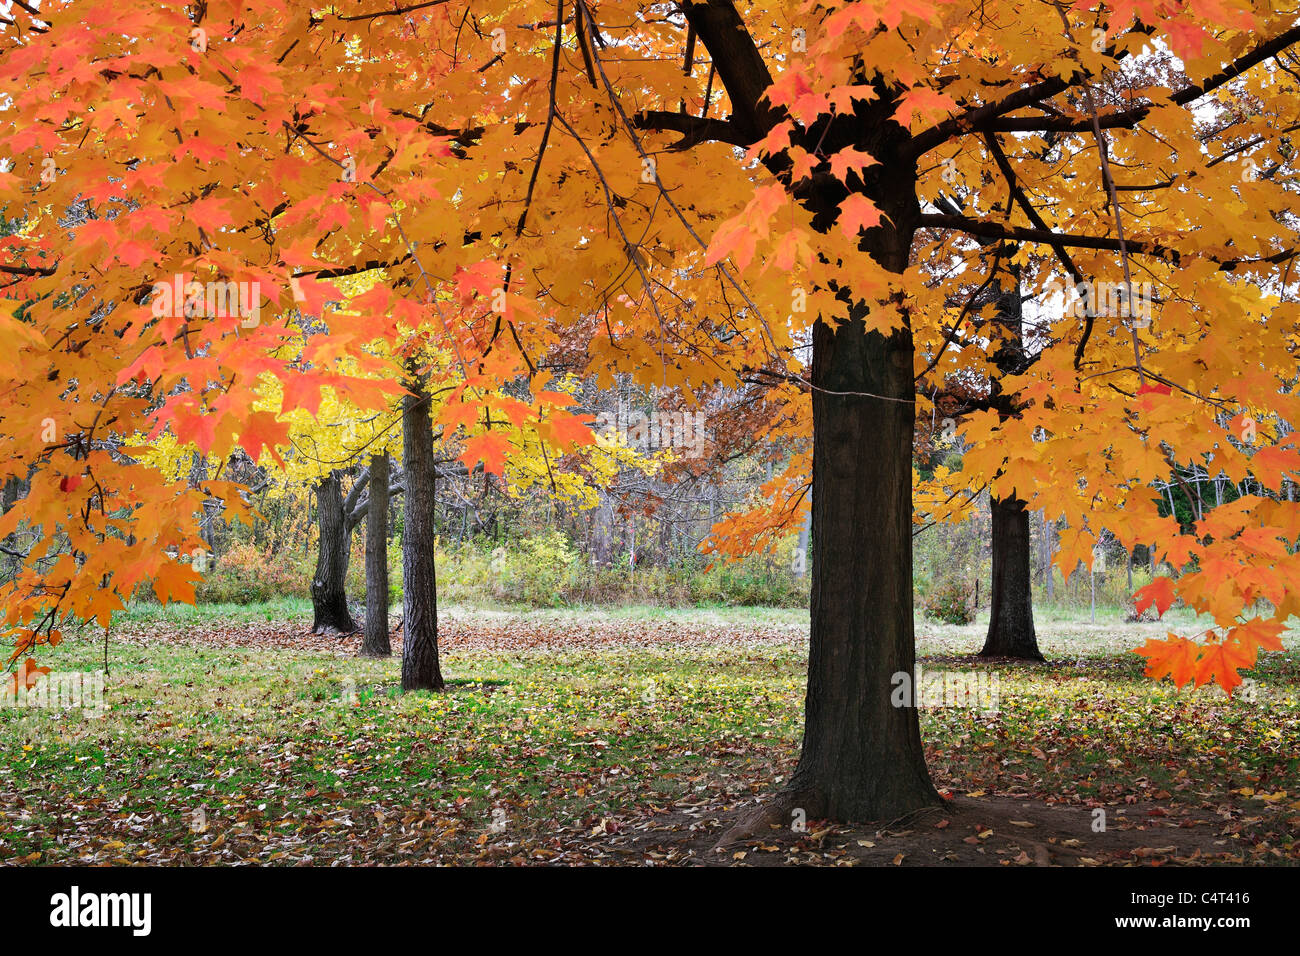 Colores vibrantes producida cuando la luz cae a través de las hojas de otoño en un día nublado en el parque, al suroeste de Ohio, EE.UU. Foto de stock